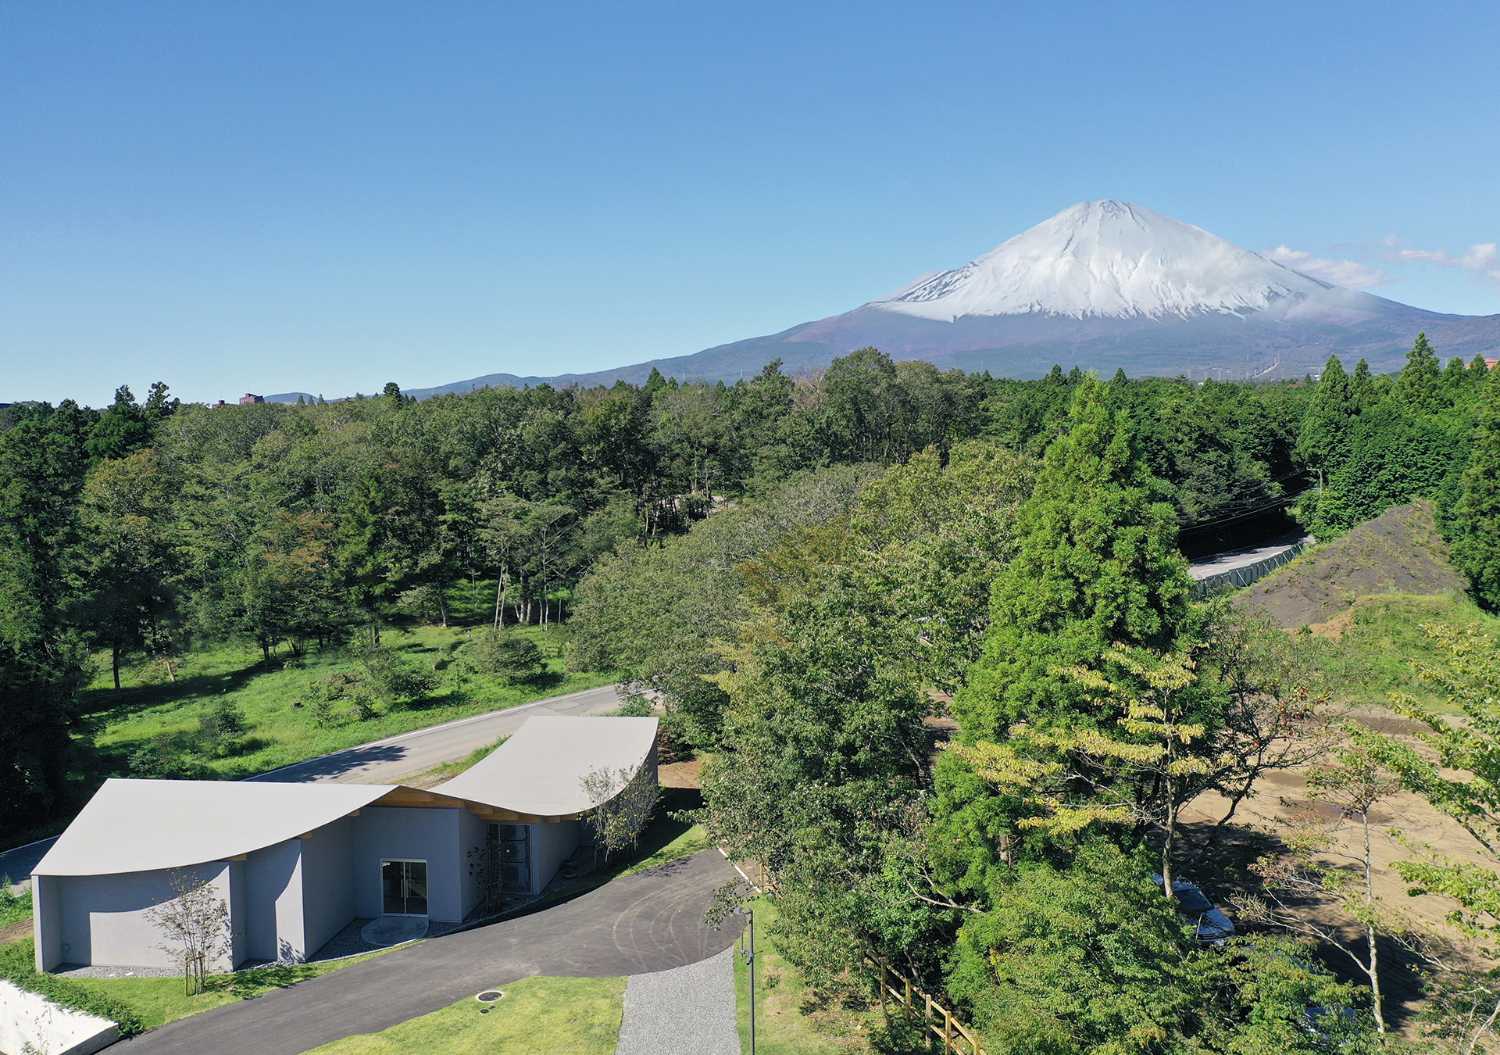 El hotel se encuentra al pie de la colina que corre hacia el Monte Fuji